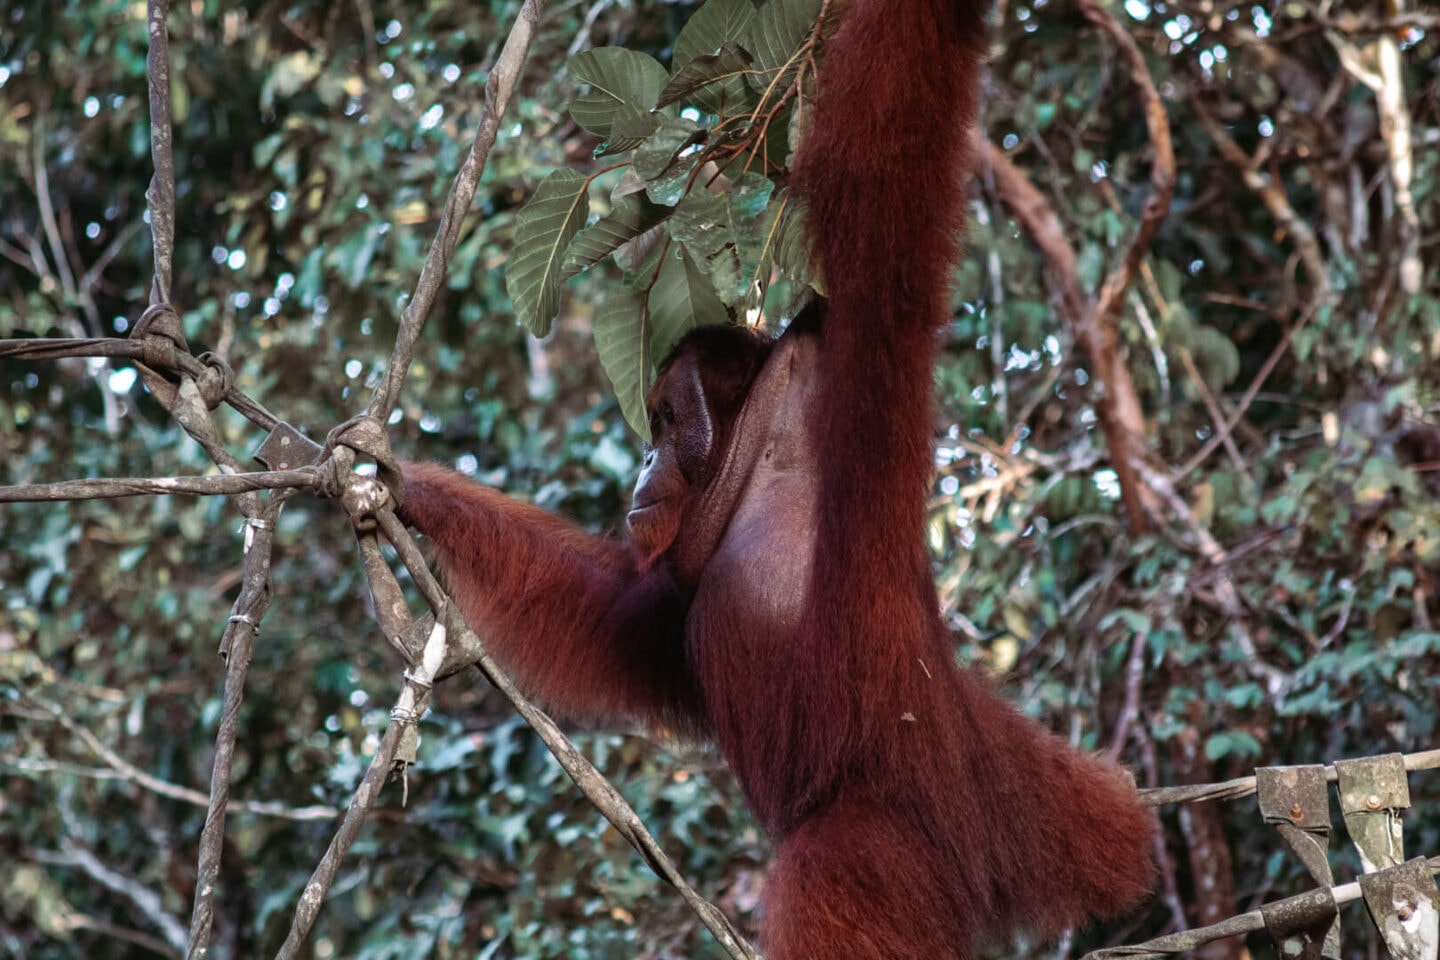 Orangutan in Malaysian Borneo